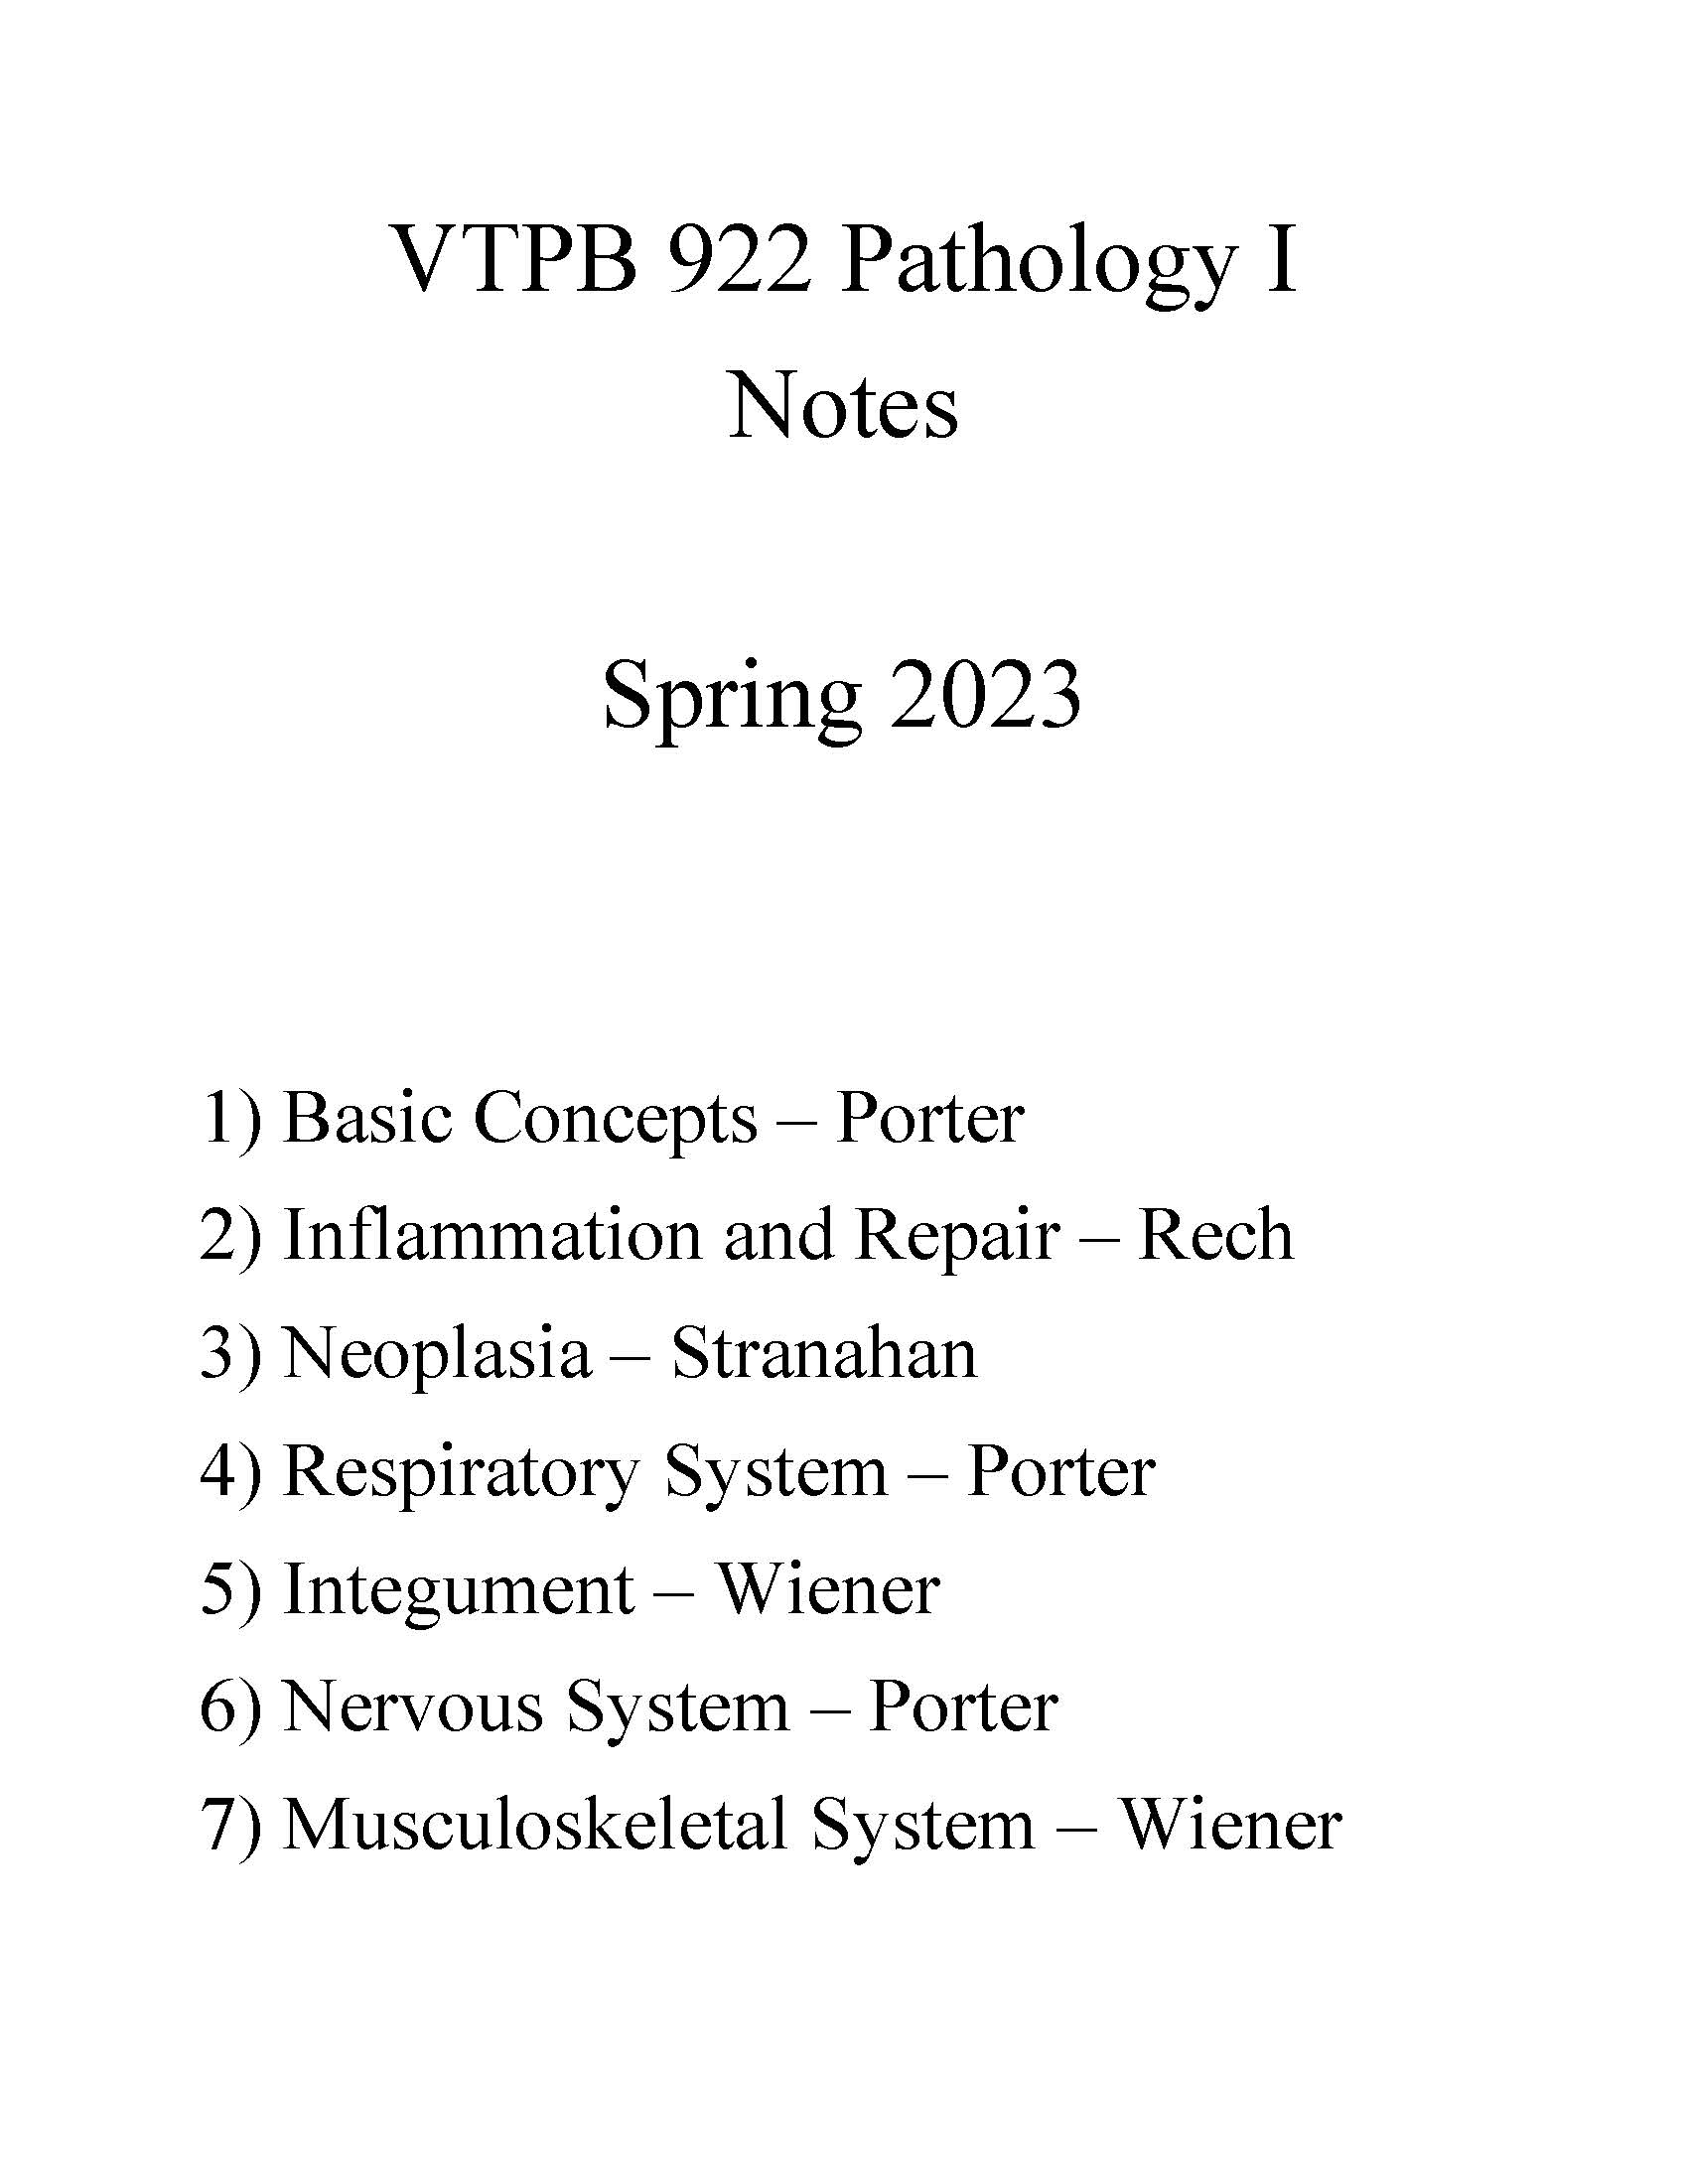 VTPB 922 Pathology I - Spring 2023